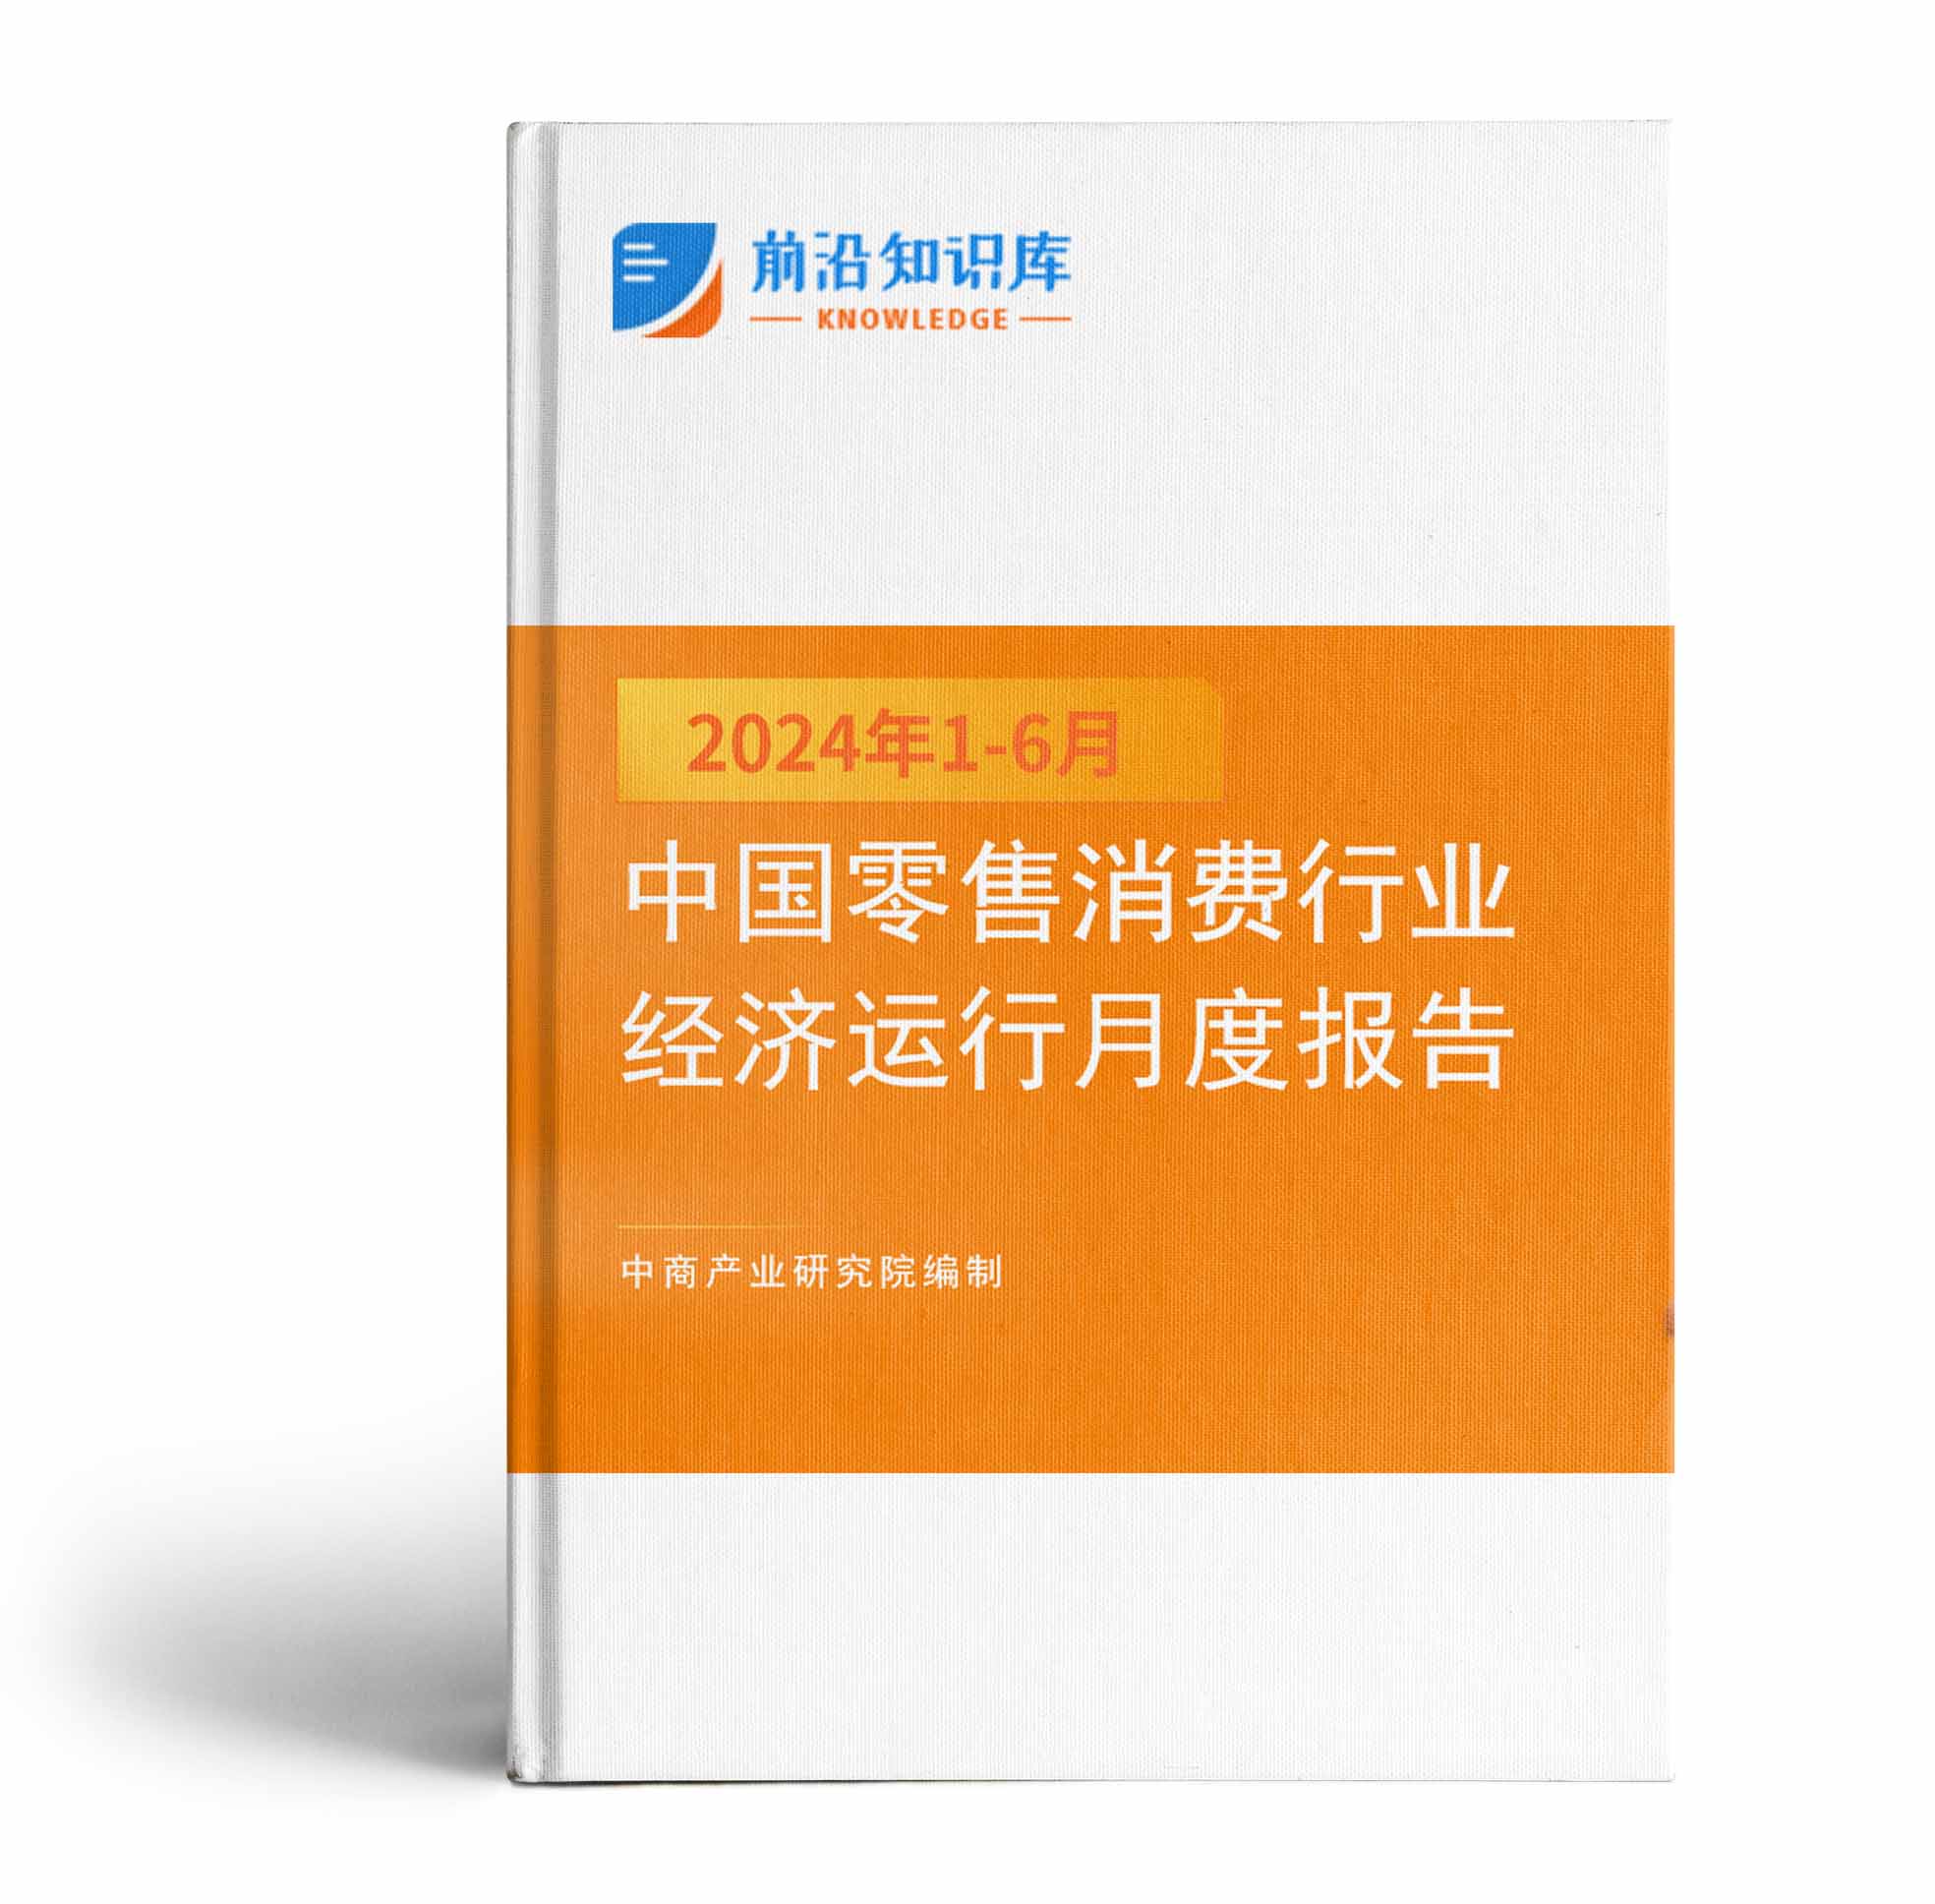 中國零售消費行業投資決策參考(2024年1-6月)